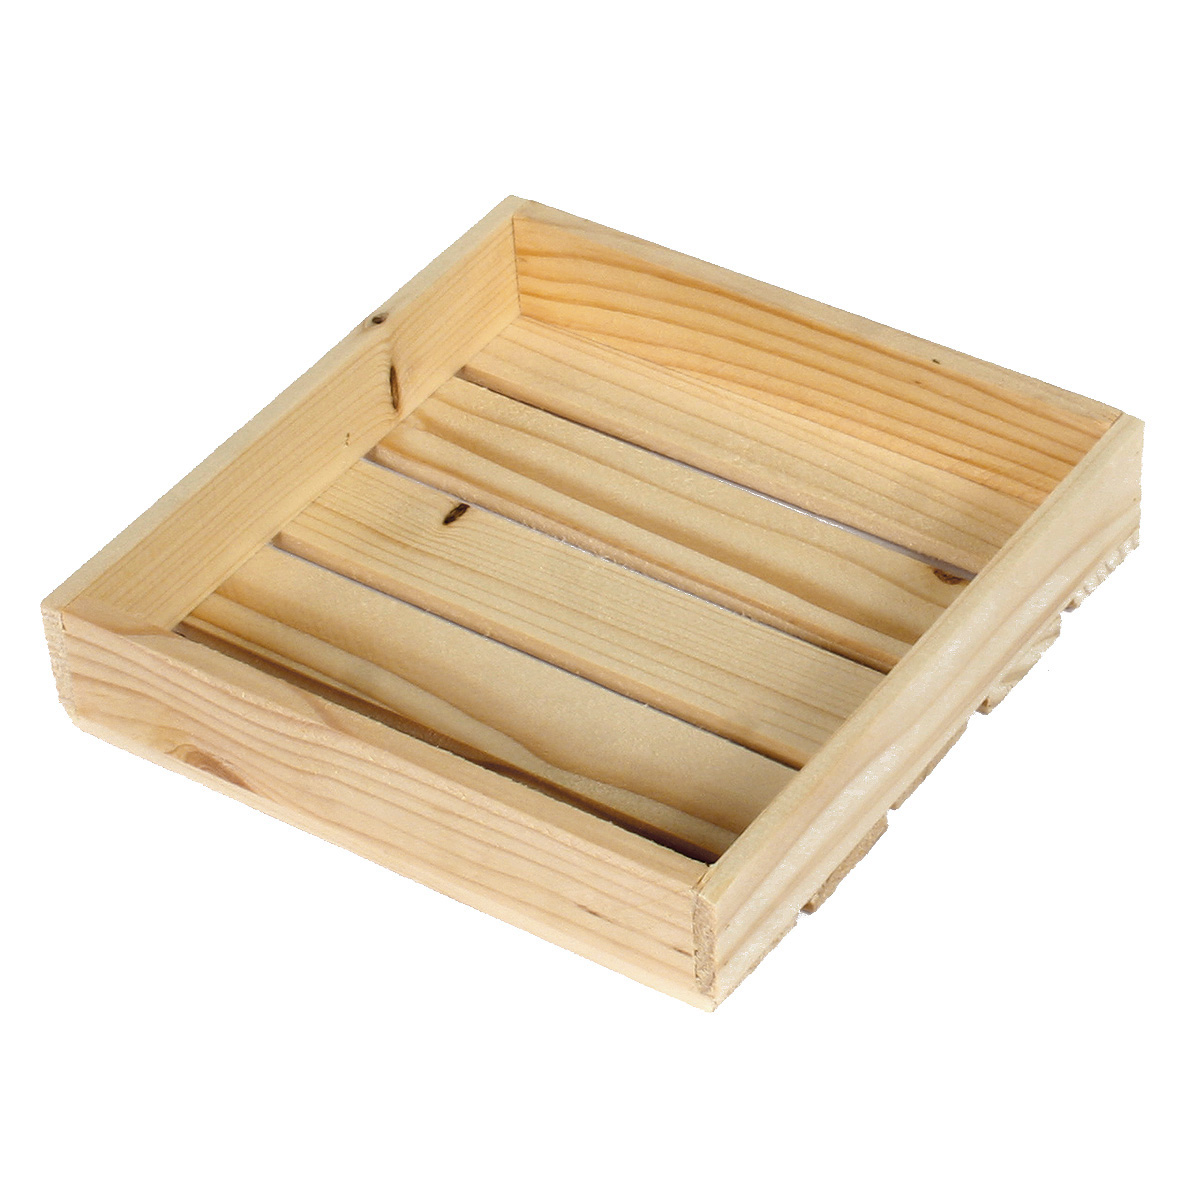 Коробка деревянная Grand Gift 402 поддон 16,5х16,5х1,8 см подарочная коробка с отделением для сладостей подарочных наборов цветочных композиций